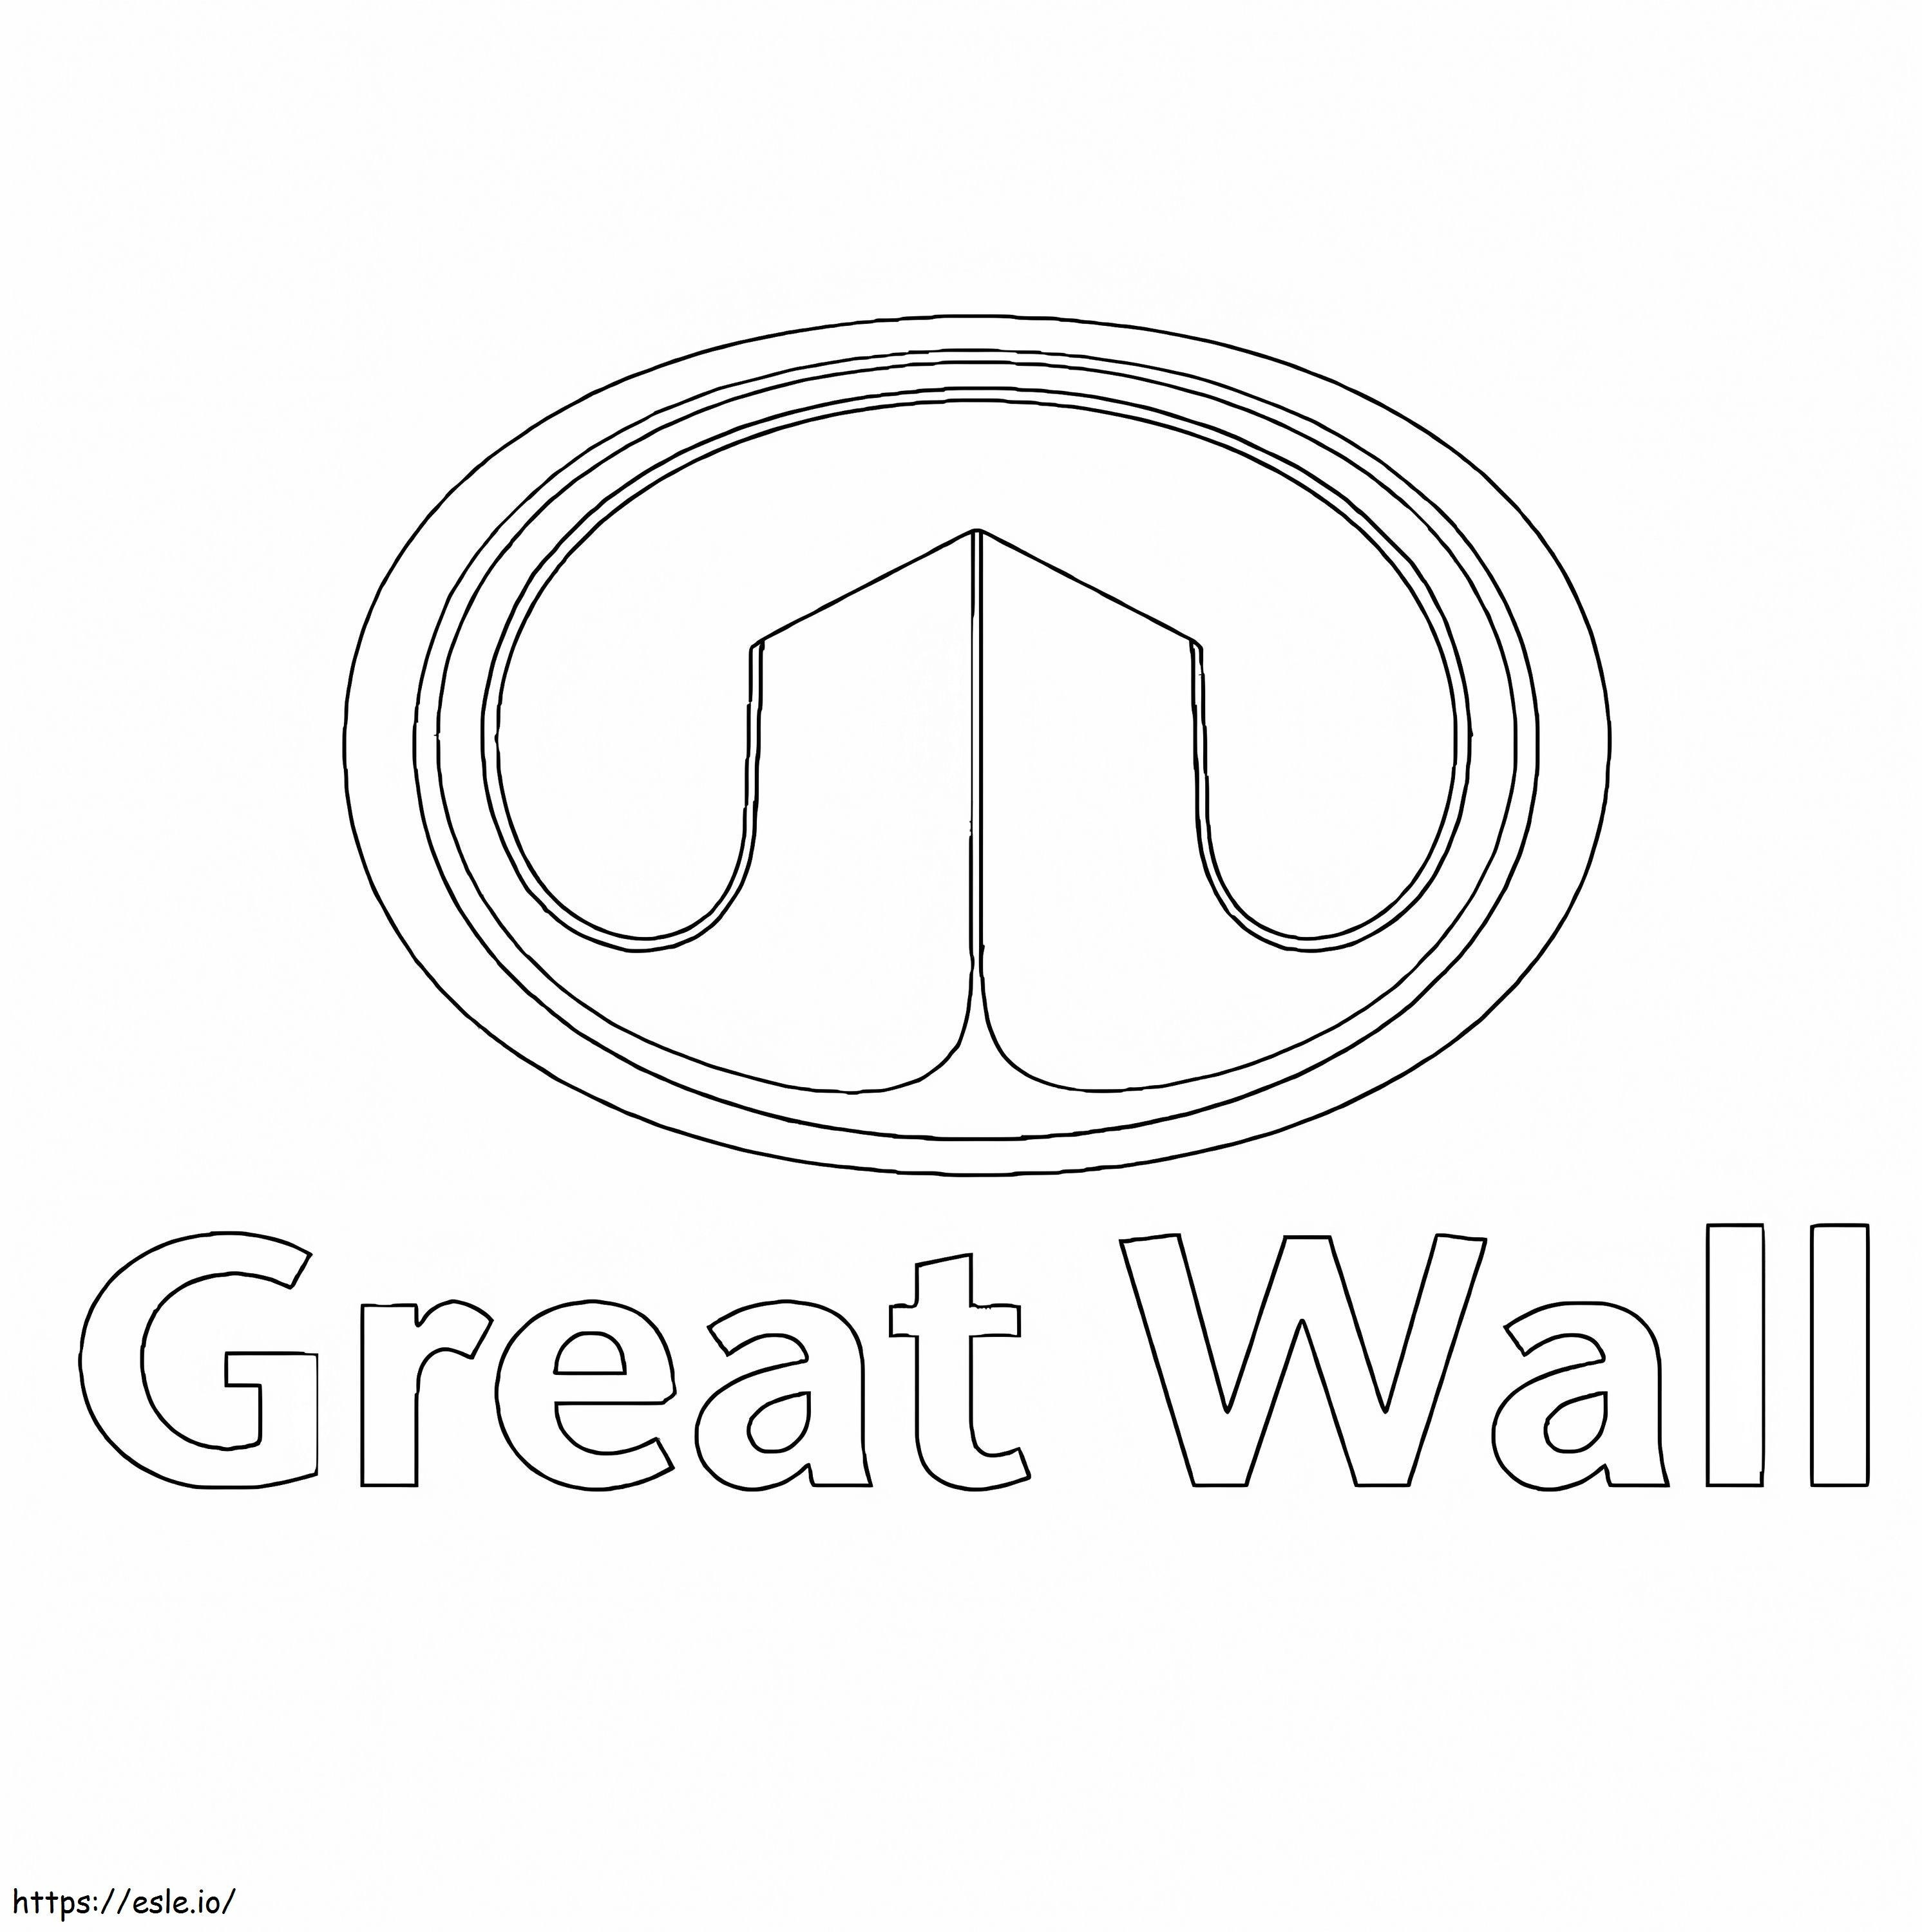 Coloriage Logo de la Grande Muraille à imprimer dessin